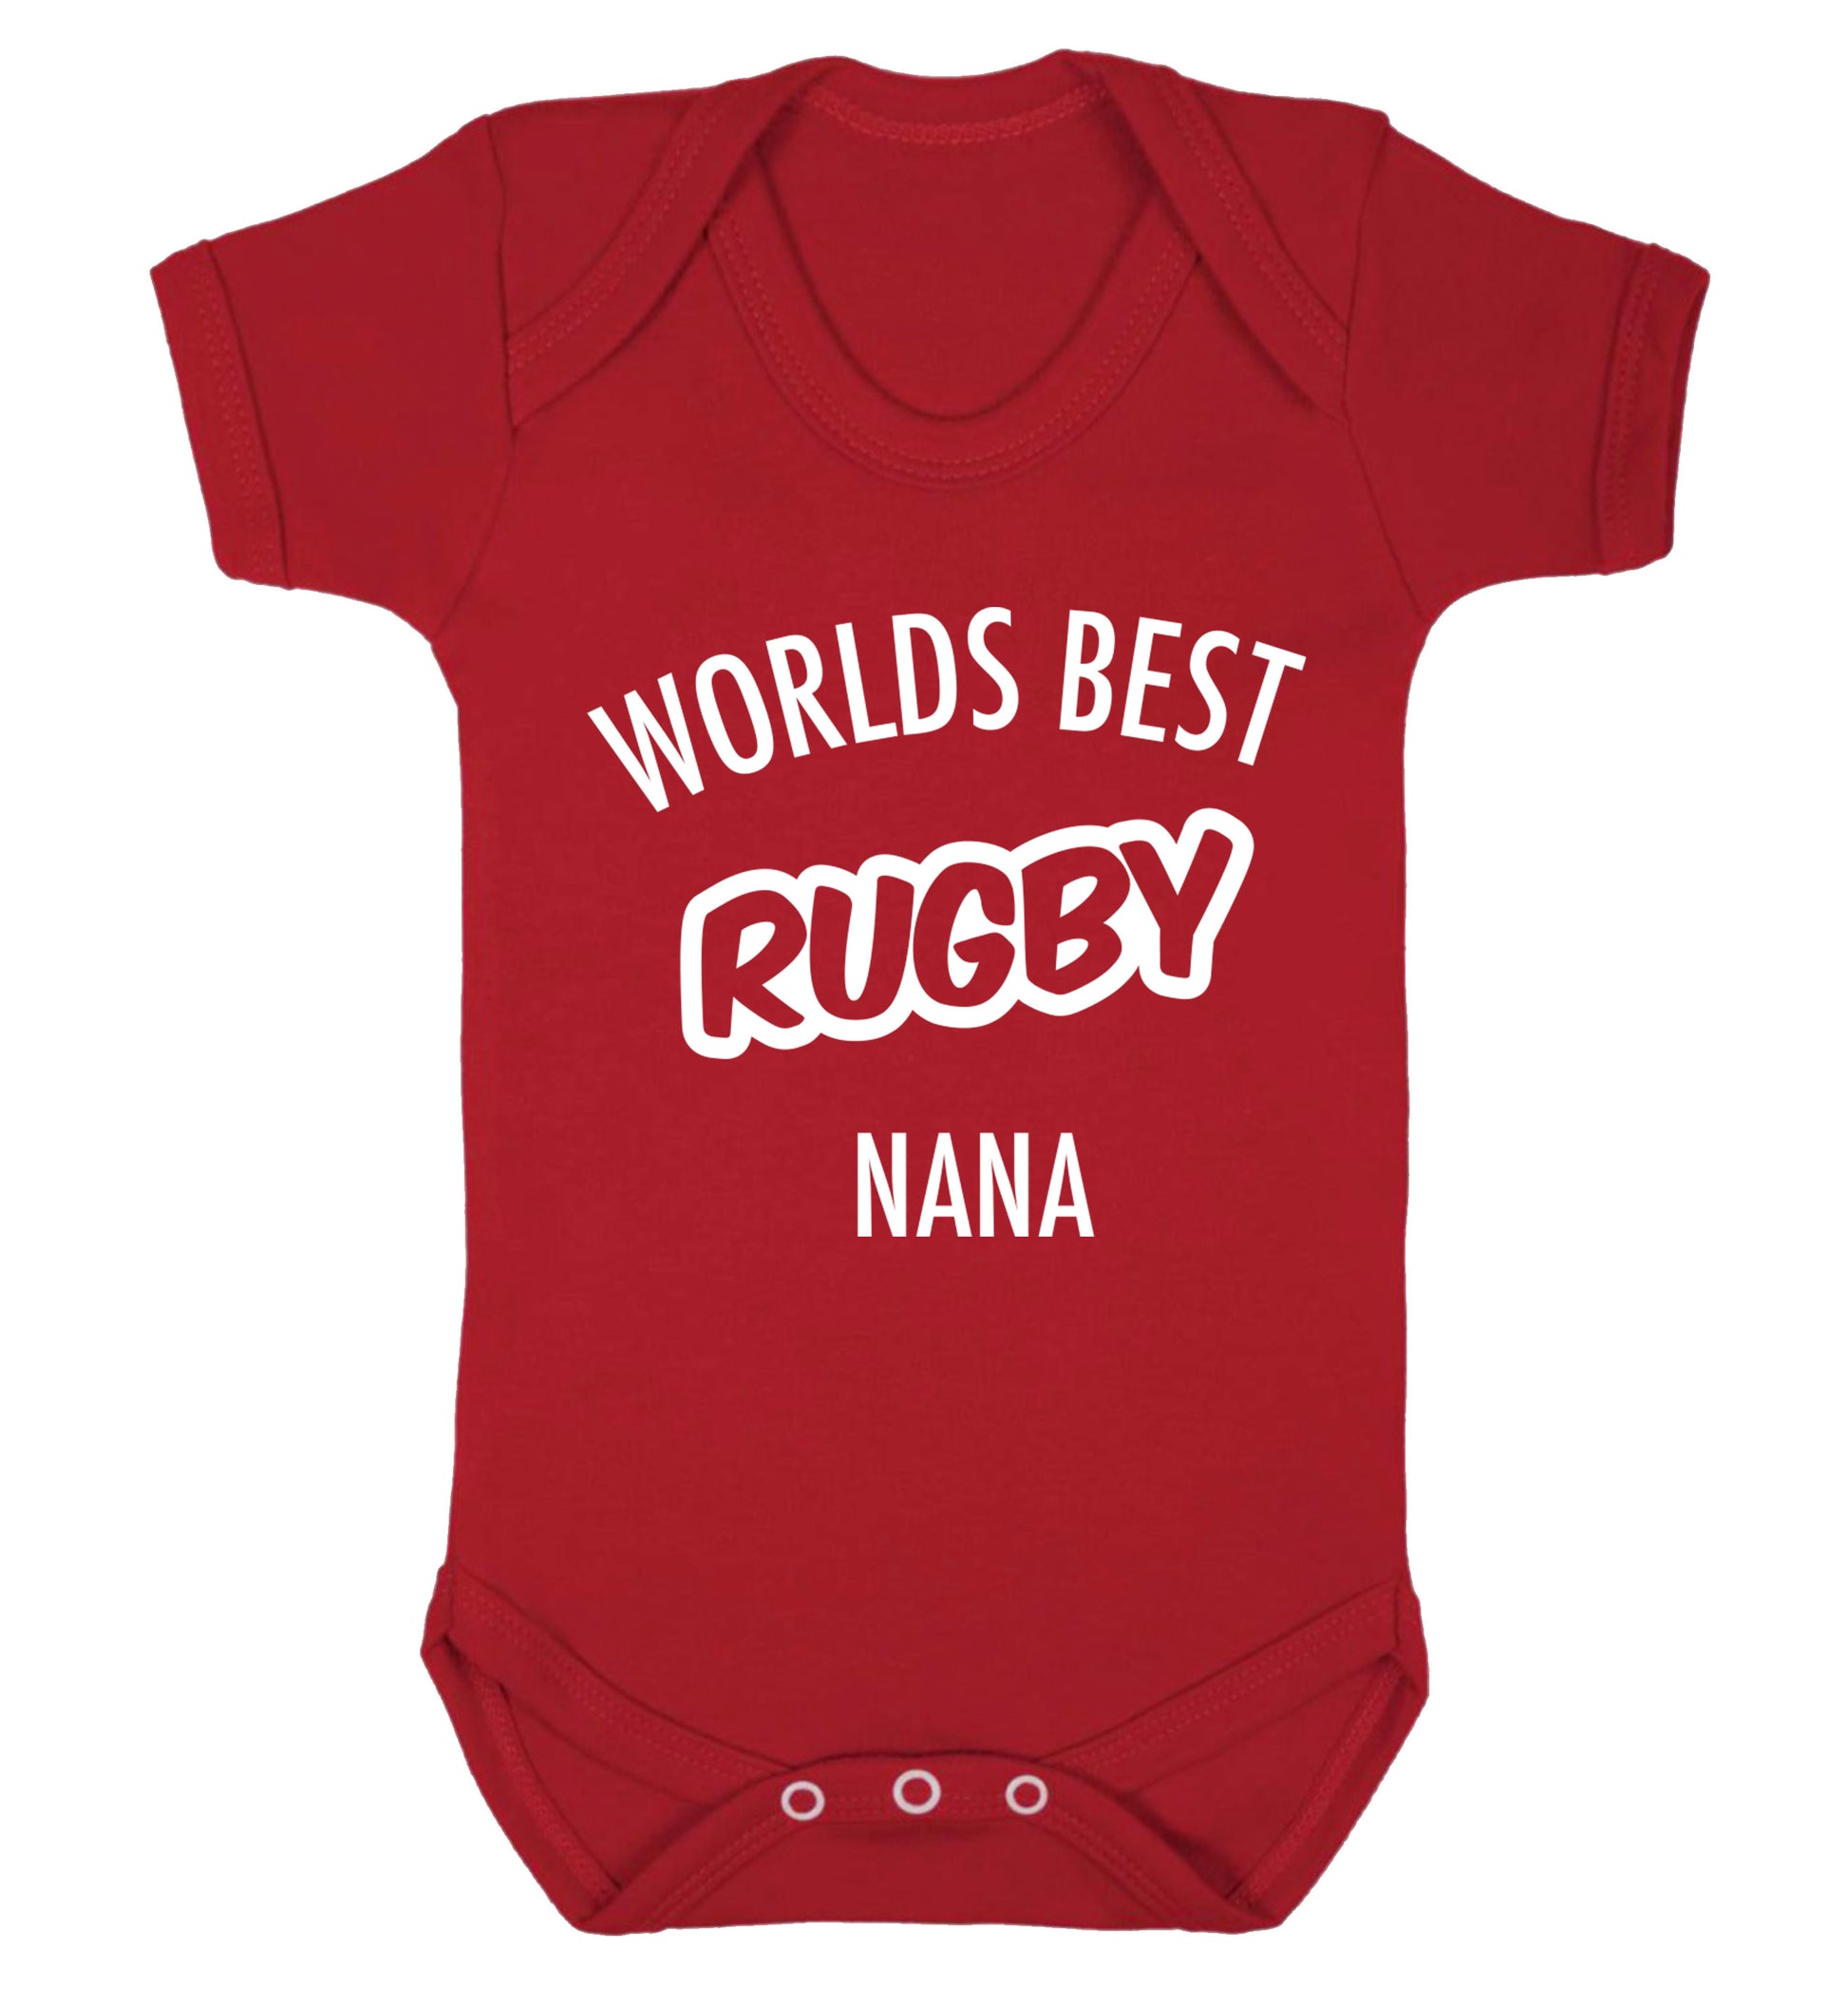 Worlds Best Rugby Grandma Baby Vest red 18-24 months